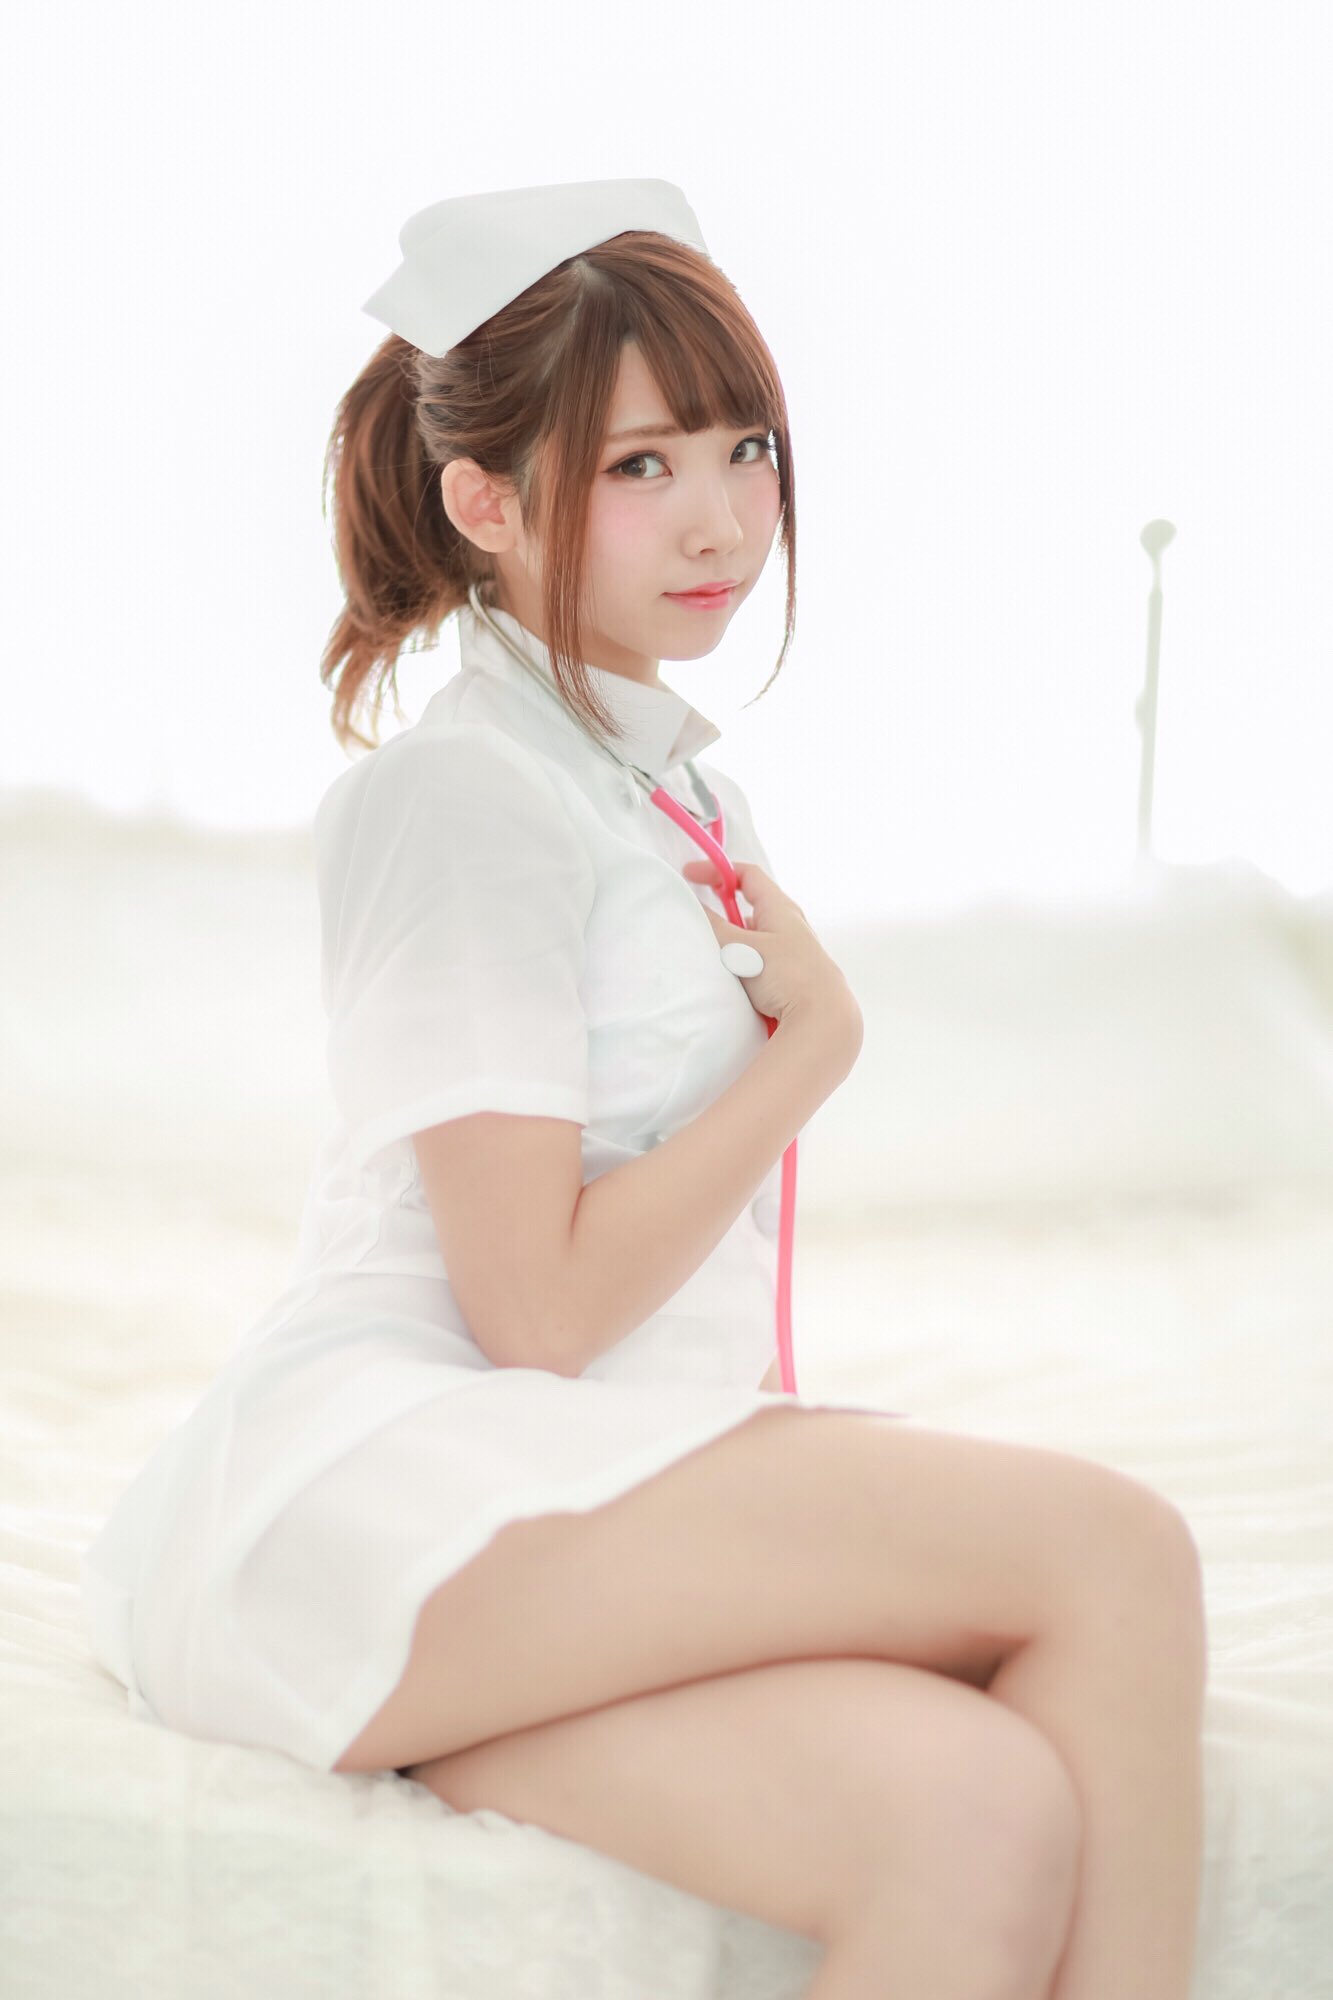 Enako Japanese Women Asian Nurse Outfit Legs Crossed Women 1333x2000